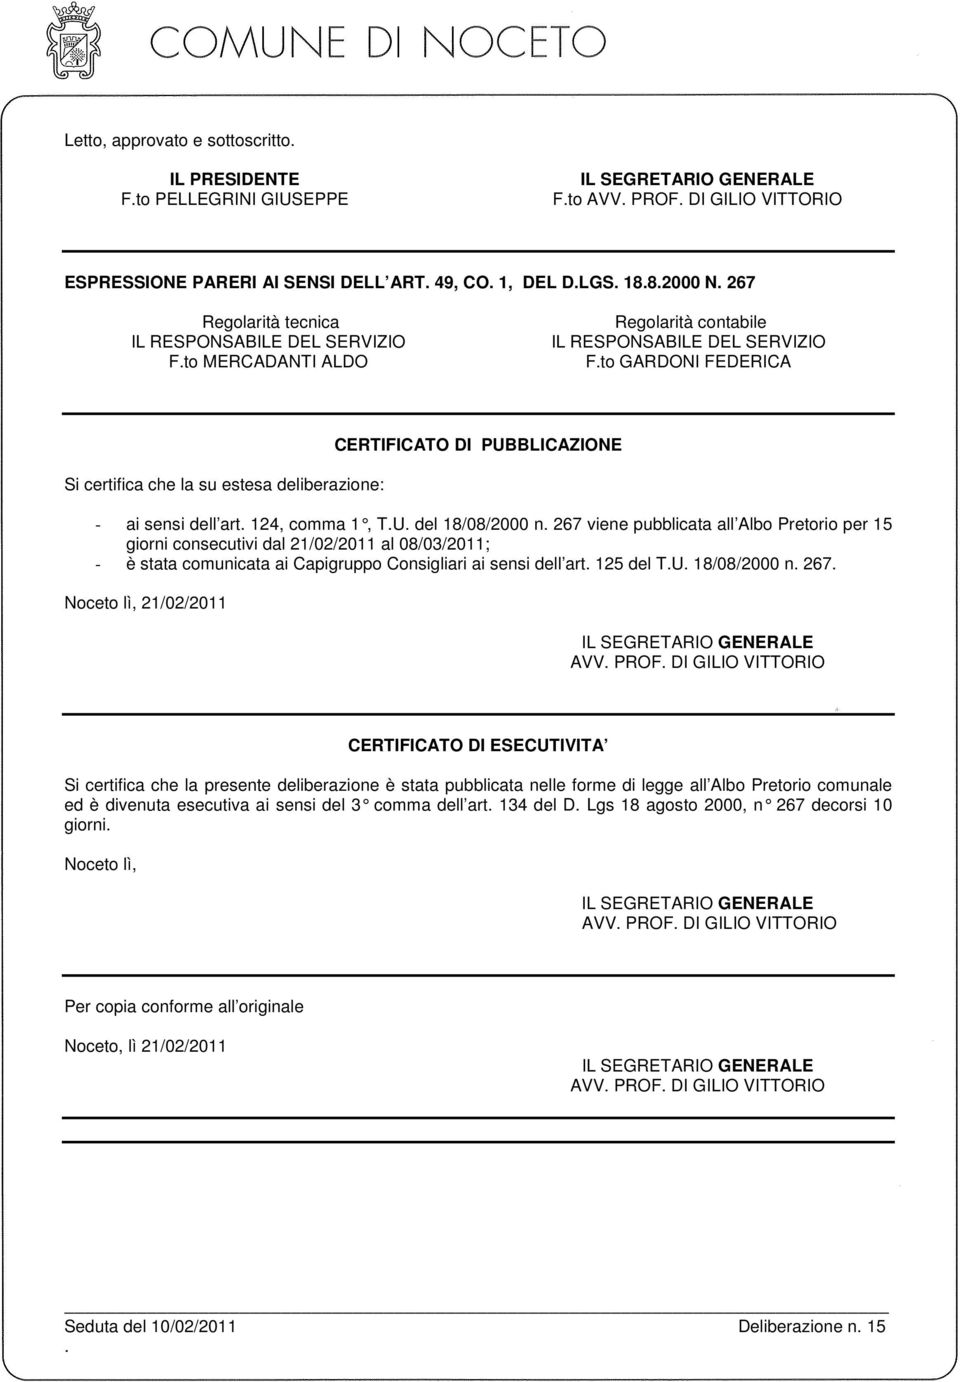 sensi dell art 124, comma 1, TU del 18/08/2 000 n 267 viene pubblicata all Albo Pretorio per 15 giorni consecutivi dal 21/02/2011 al 08/03/2011; - è stata comunicata ai Capigruppo Consigliari ai